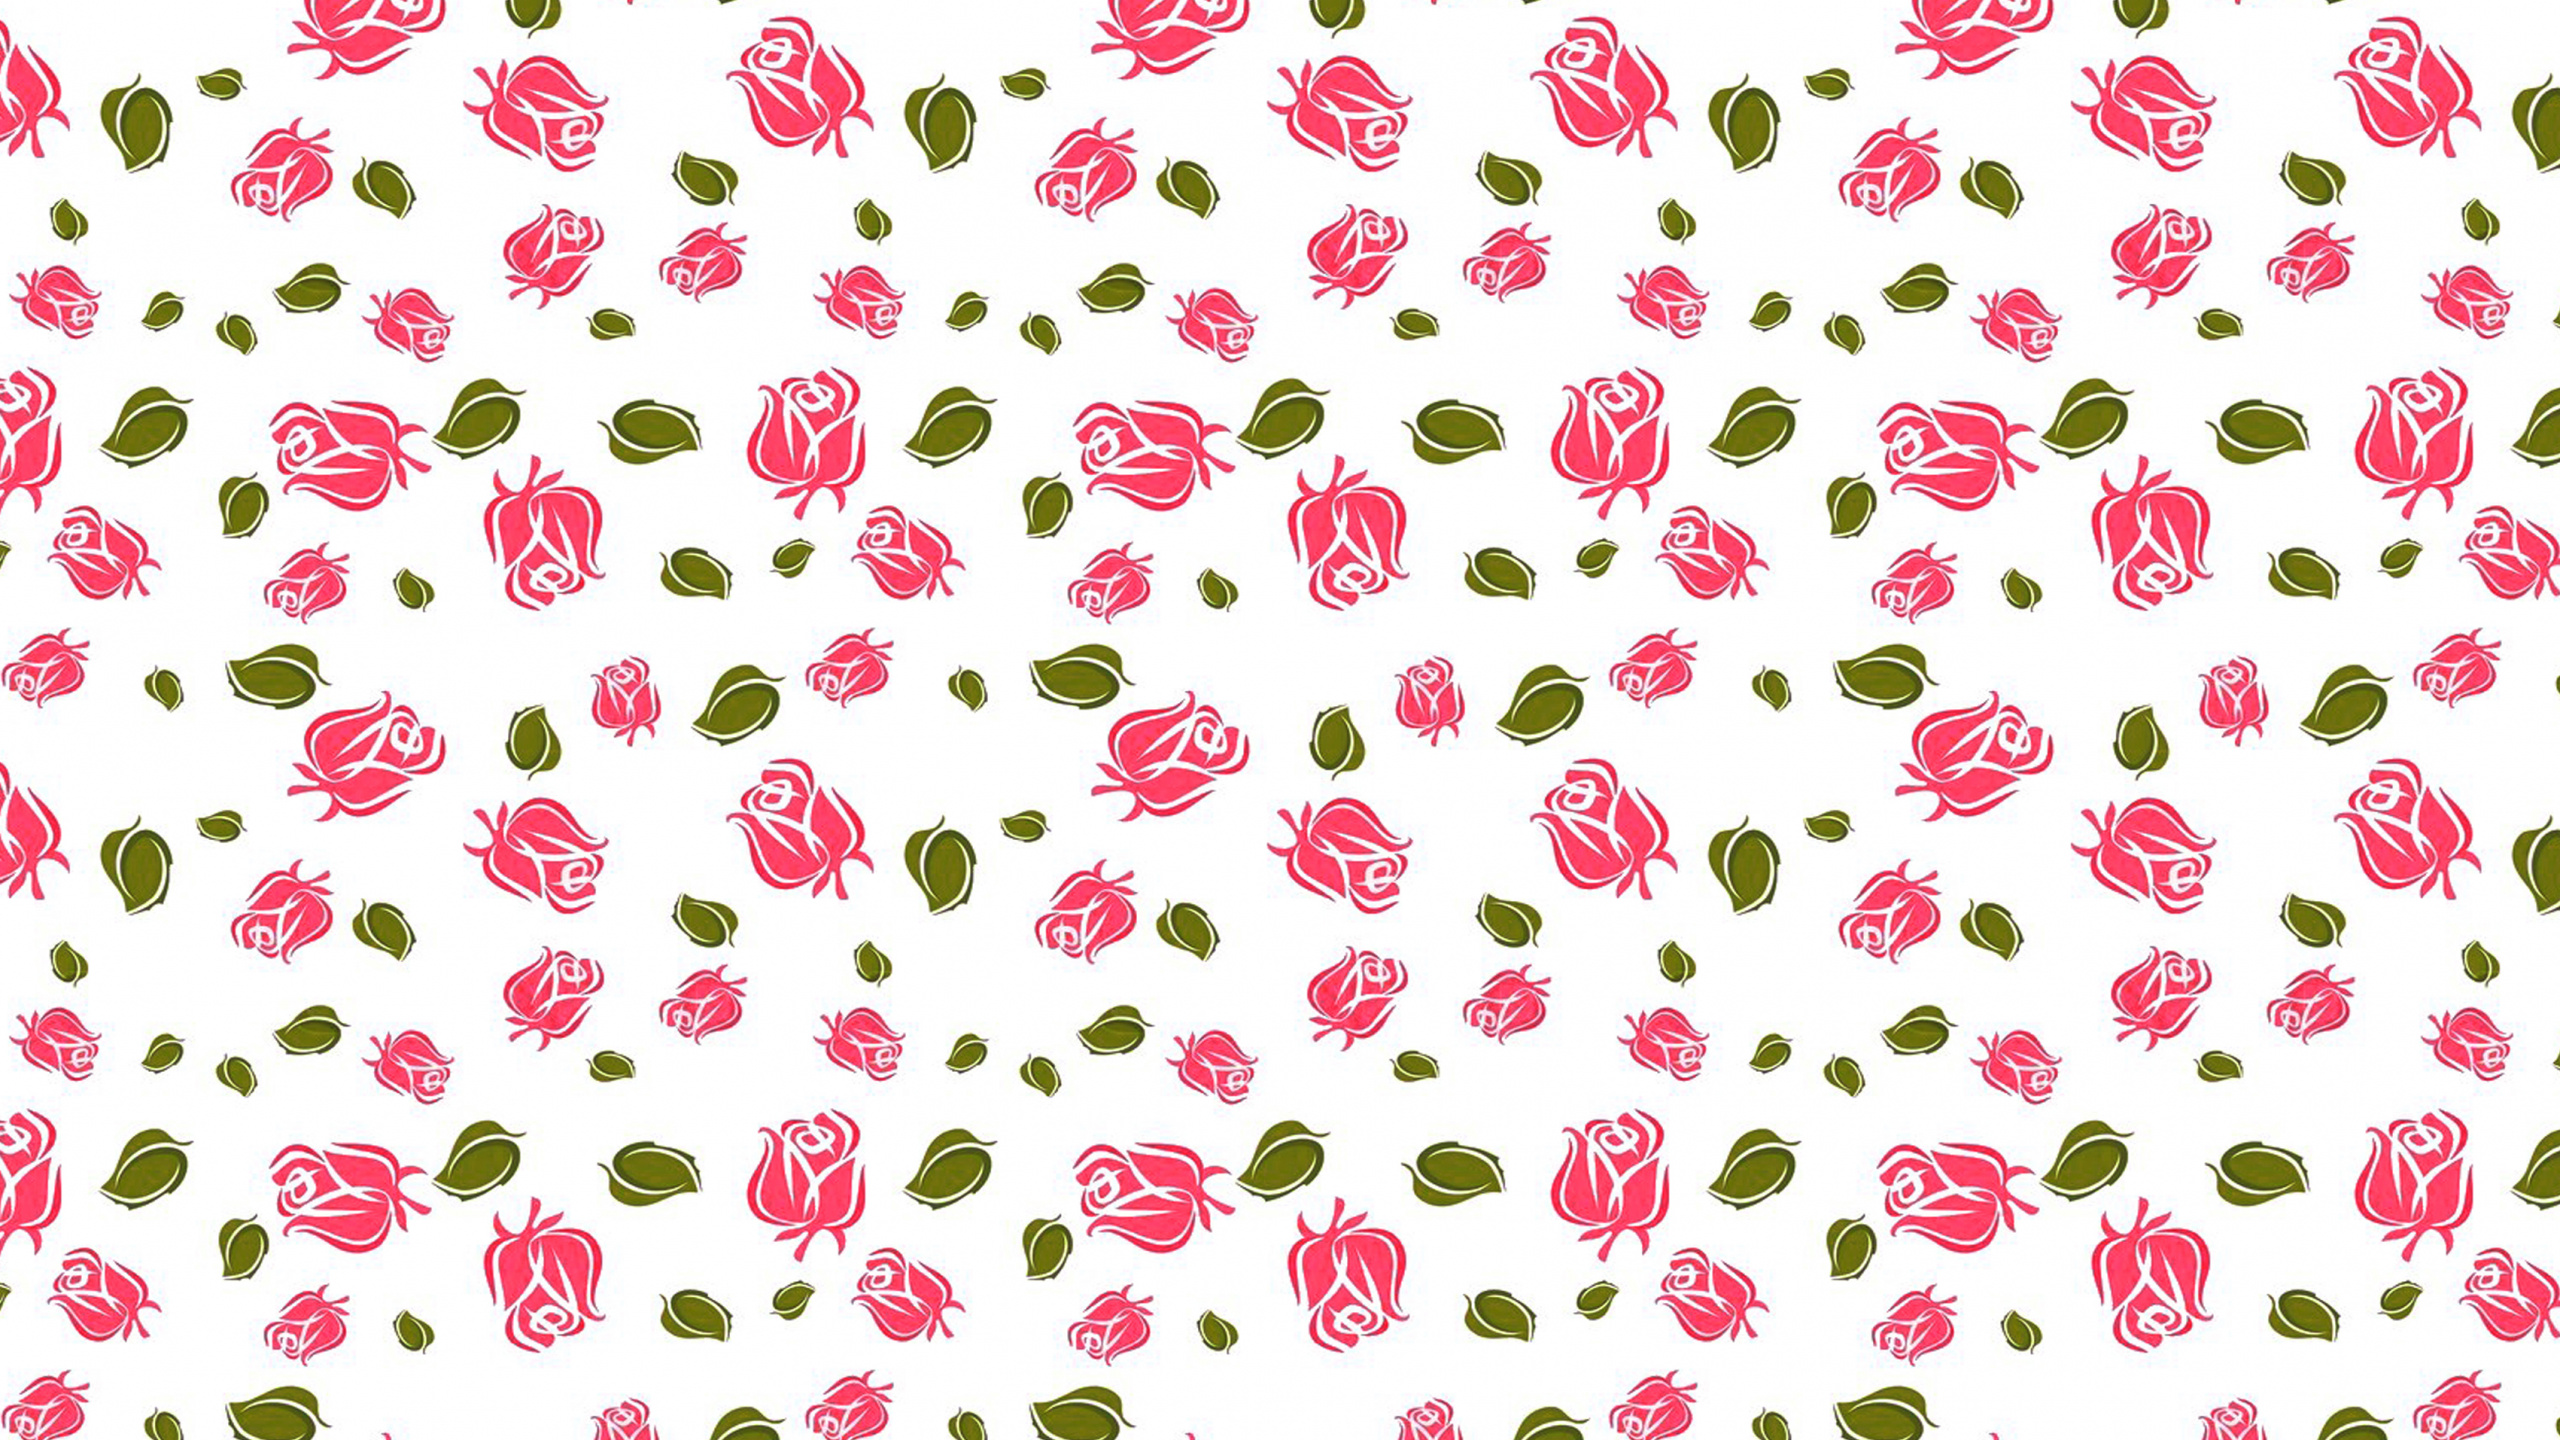 心脏, 粉红色, 菌群, 花卉设计, 玫瑰花园 壁纸 2560x1440 允许